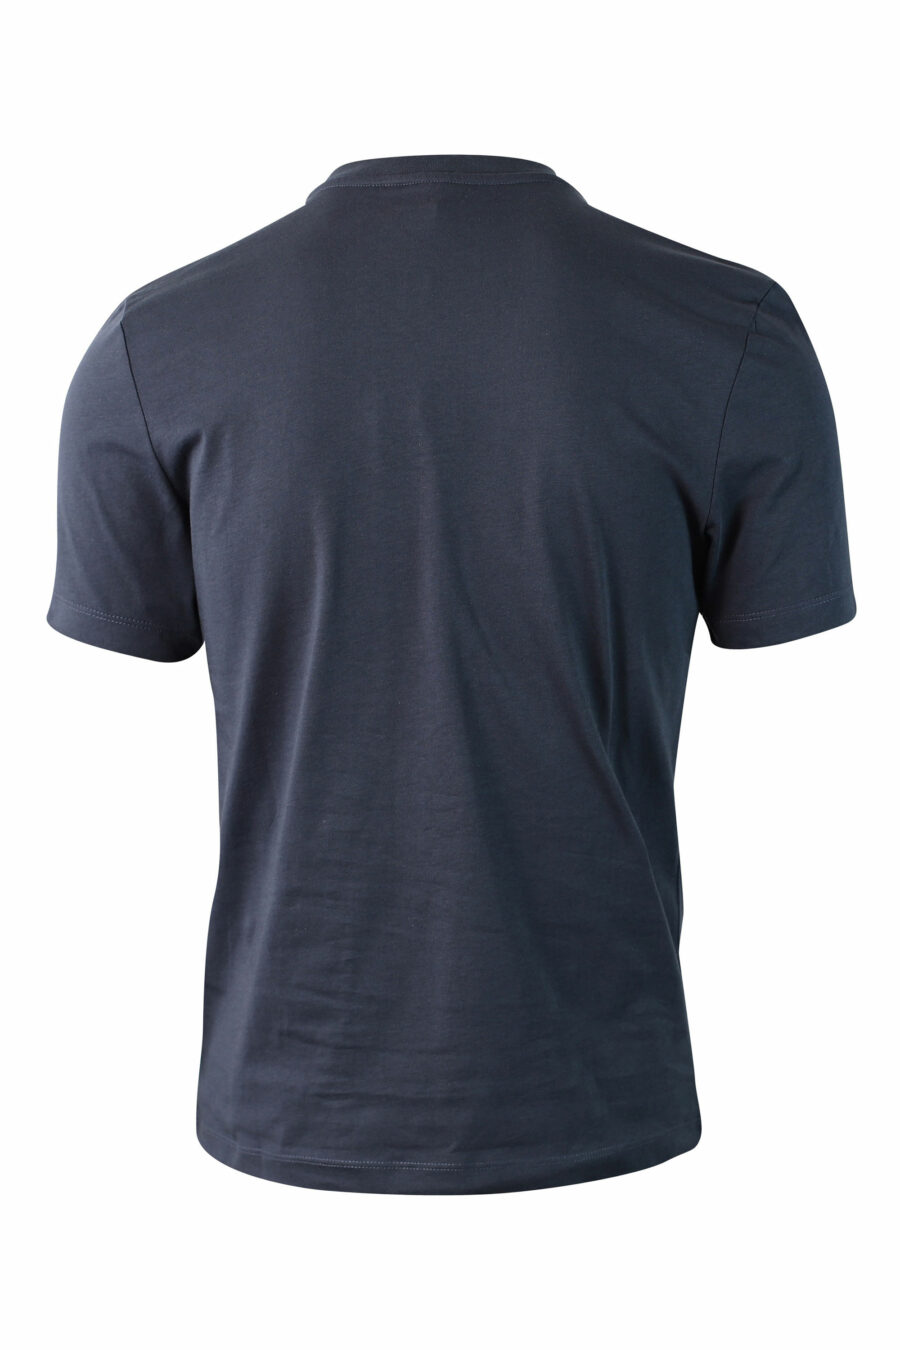 T-shirt azul com maxilogo monocromático - IMG 0045